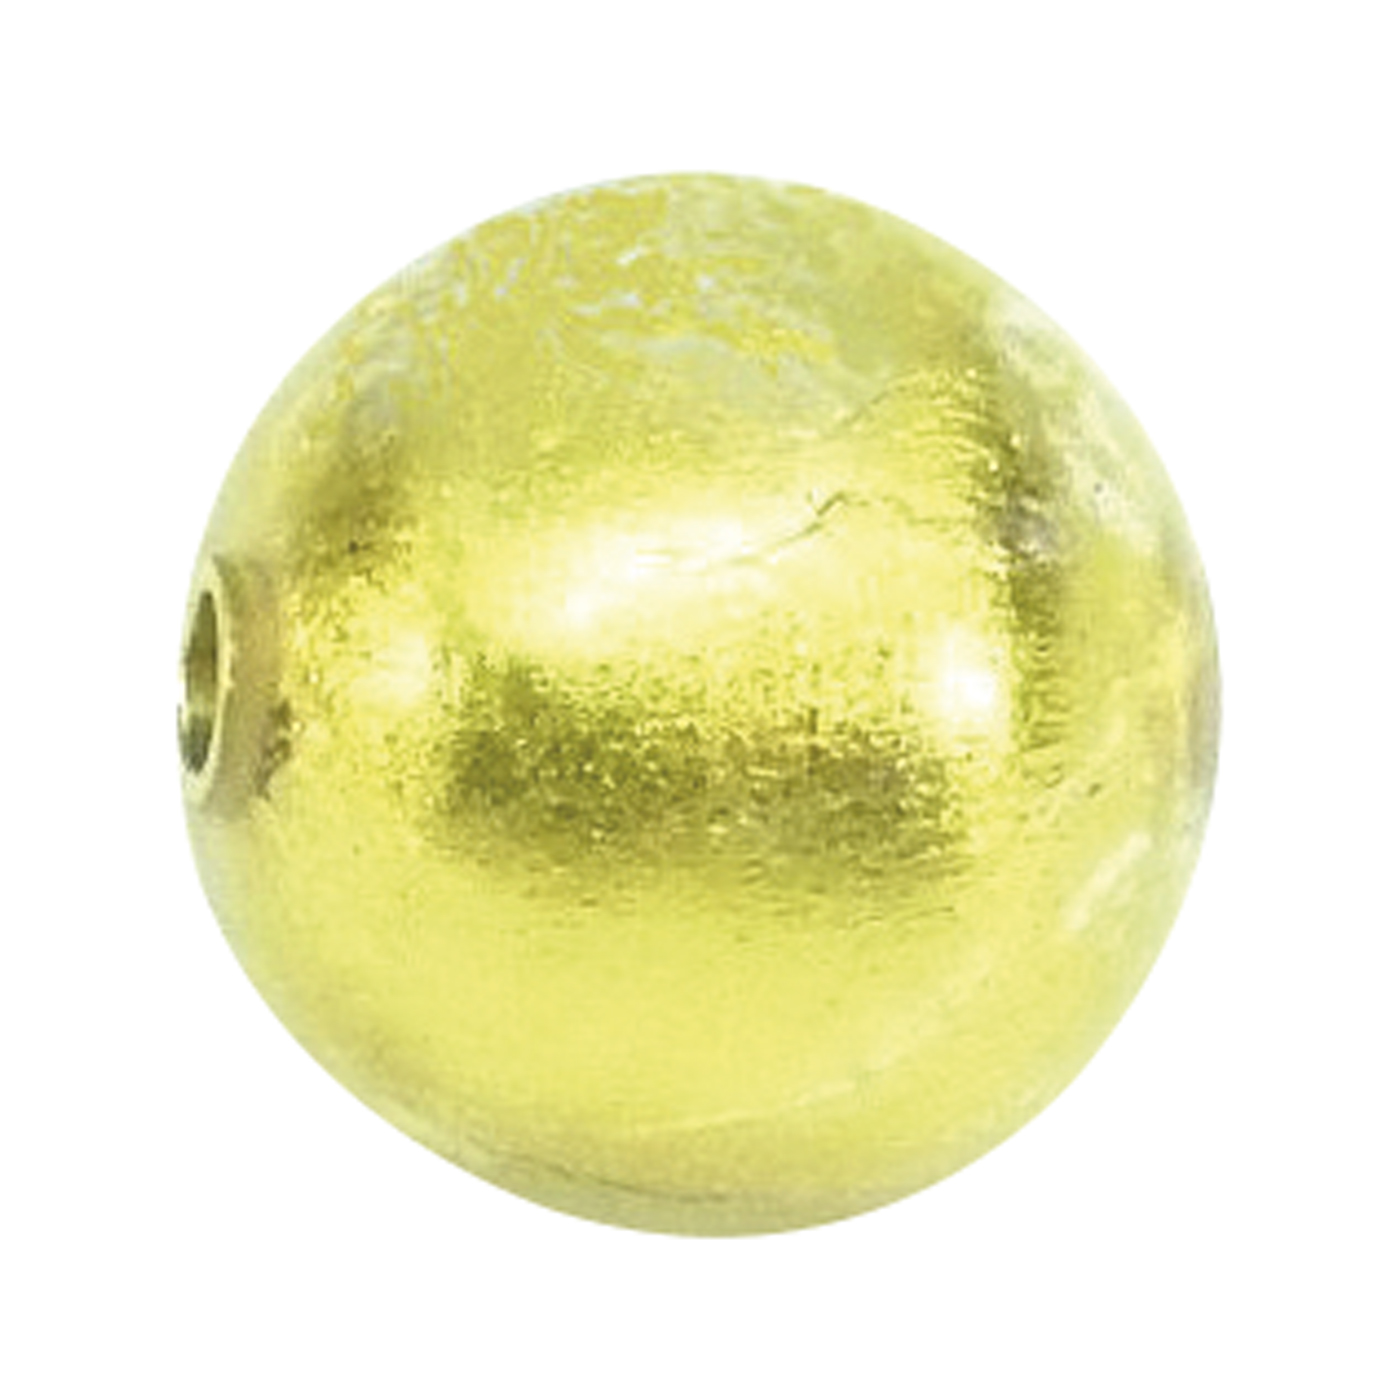 Wechselschließe, Muranoglas, Kugel, gold, ø 16 mm - 1 Stück